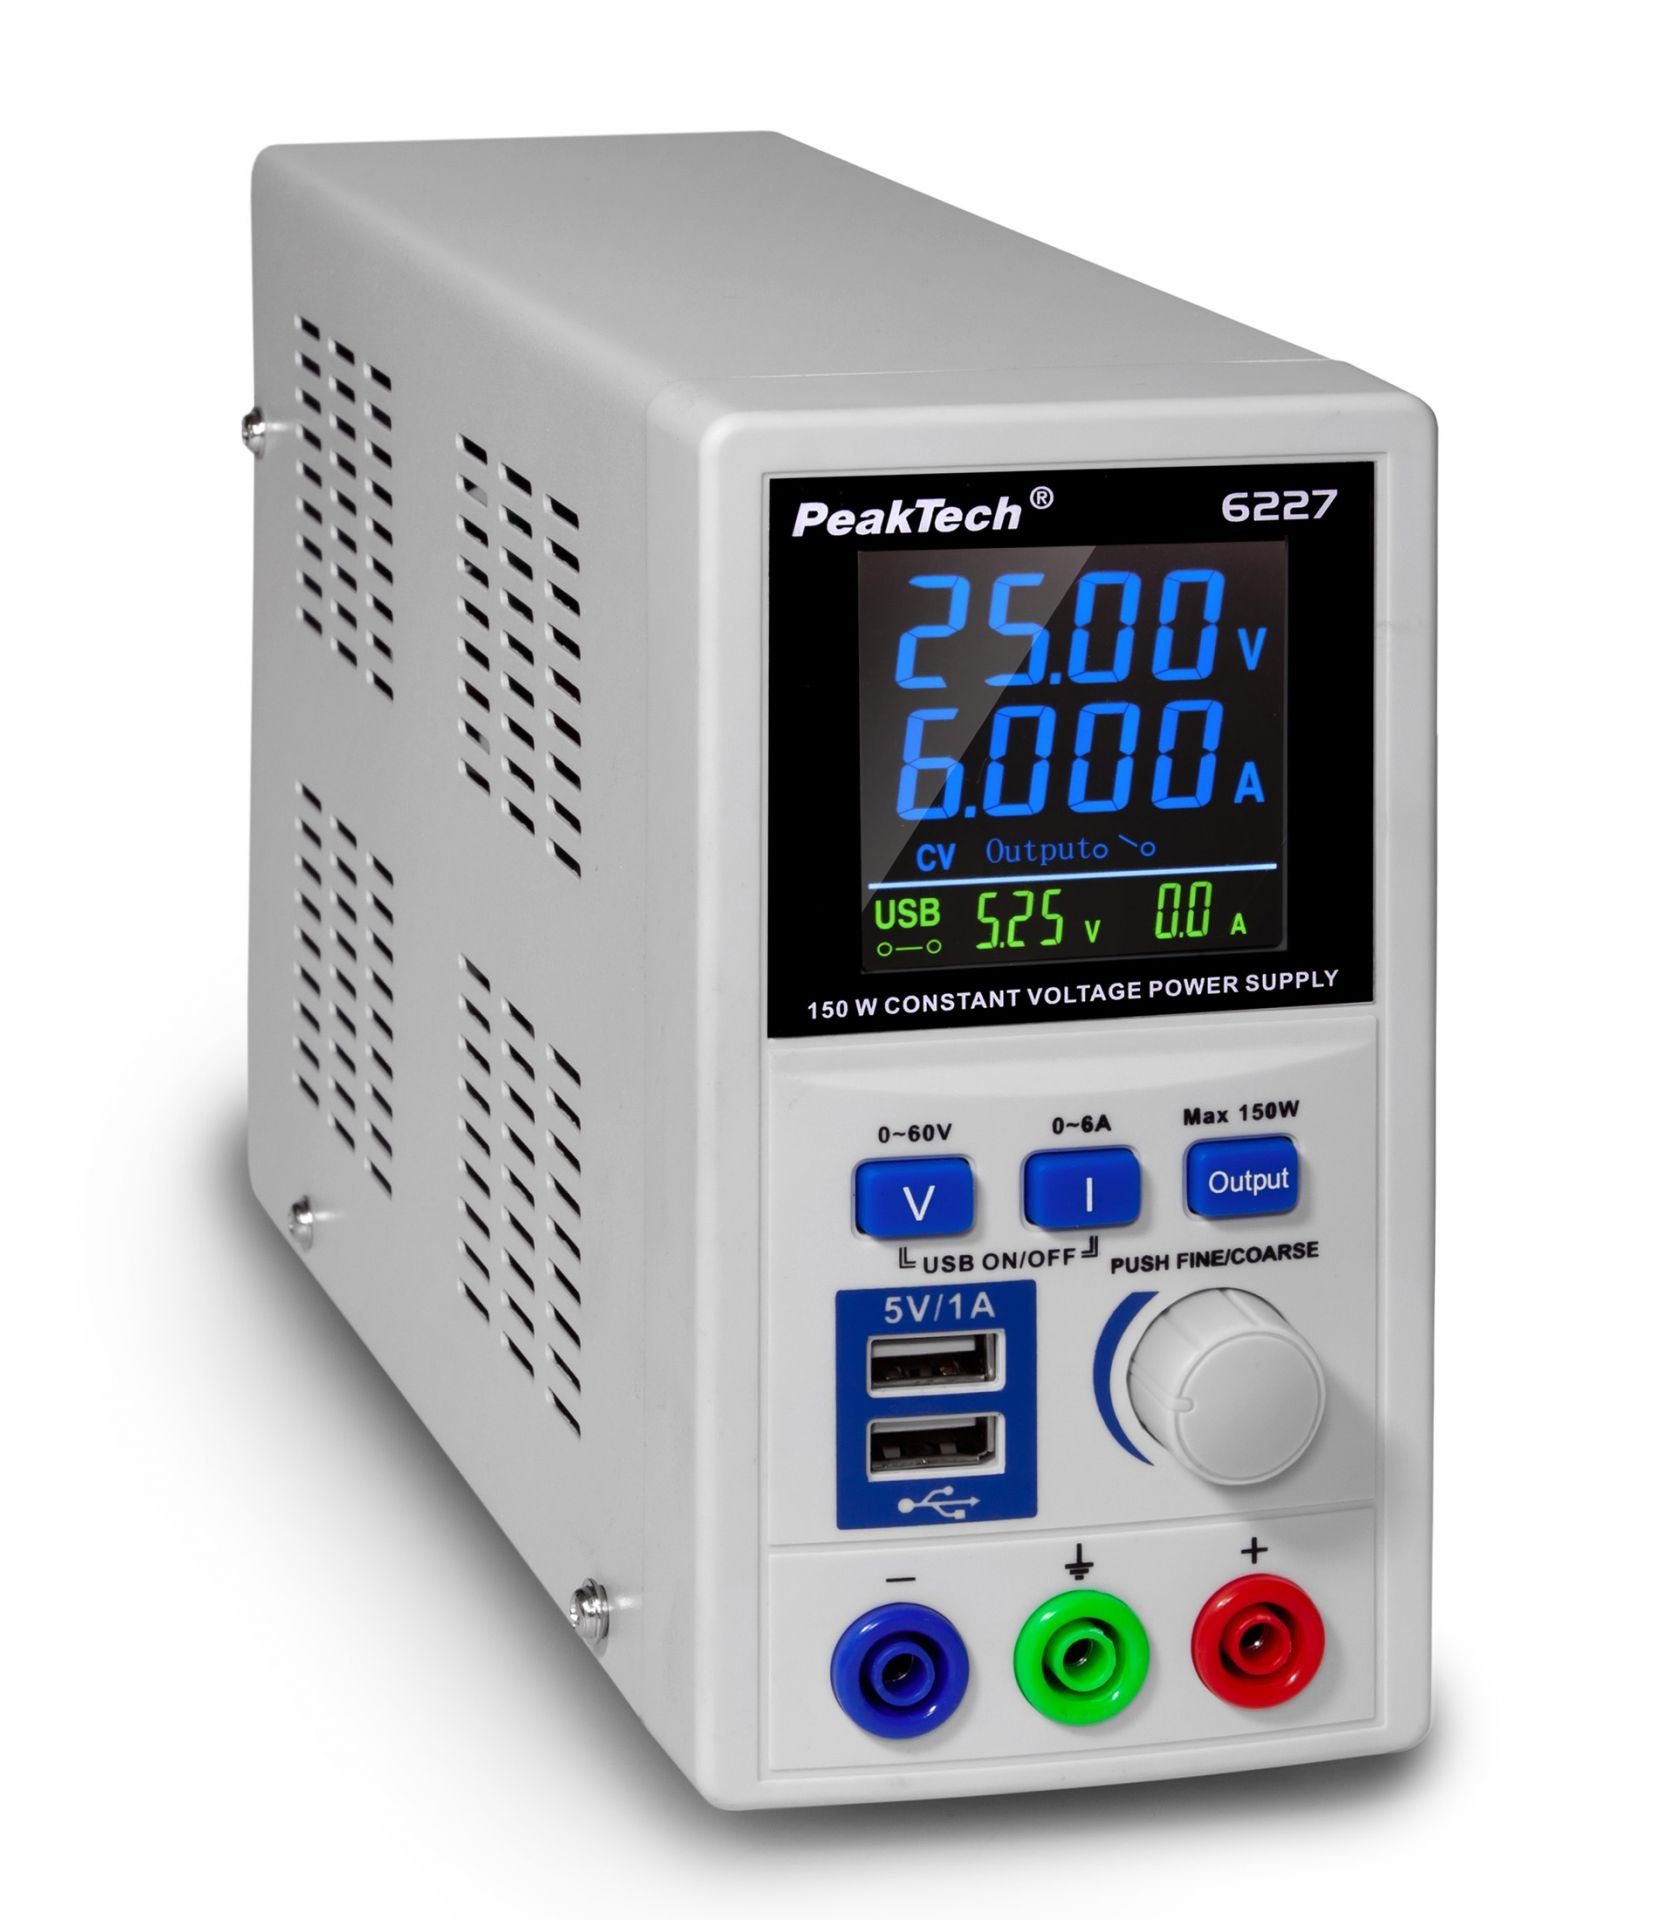 PeakTech »PeakTech P 6227: DC Schaltnetzgerät, 0-60V, 0-6A, 150W max, Labor  Netzgerät mit präziser LCD Anzeige« Labor-Netzteil